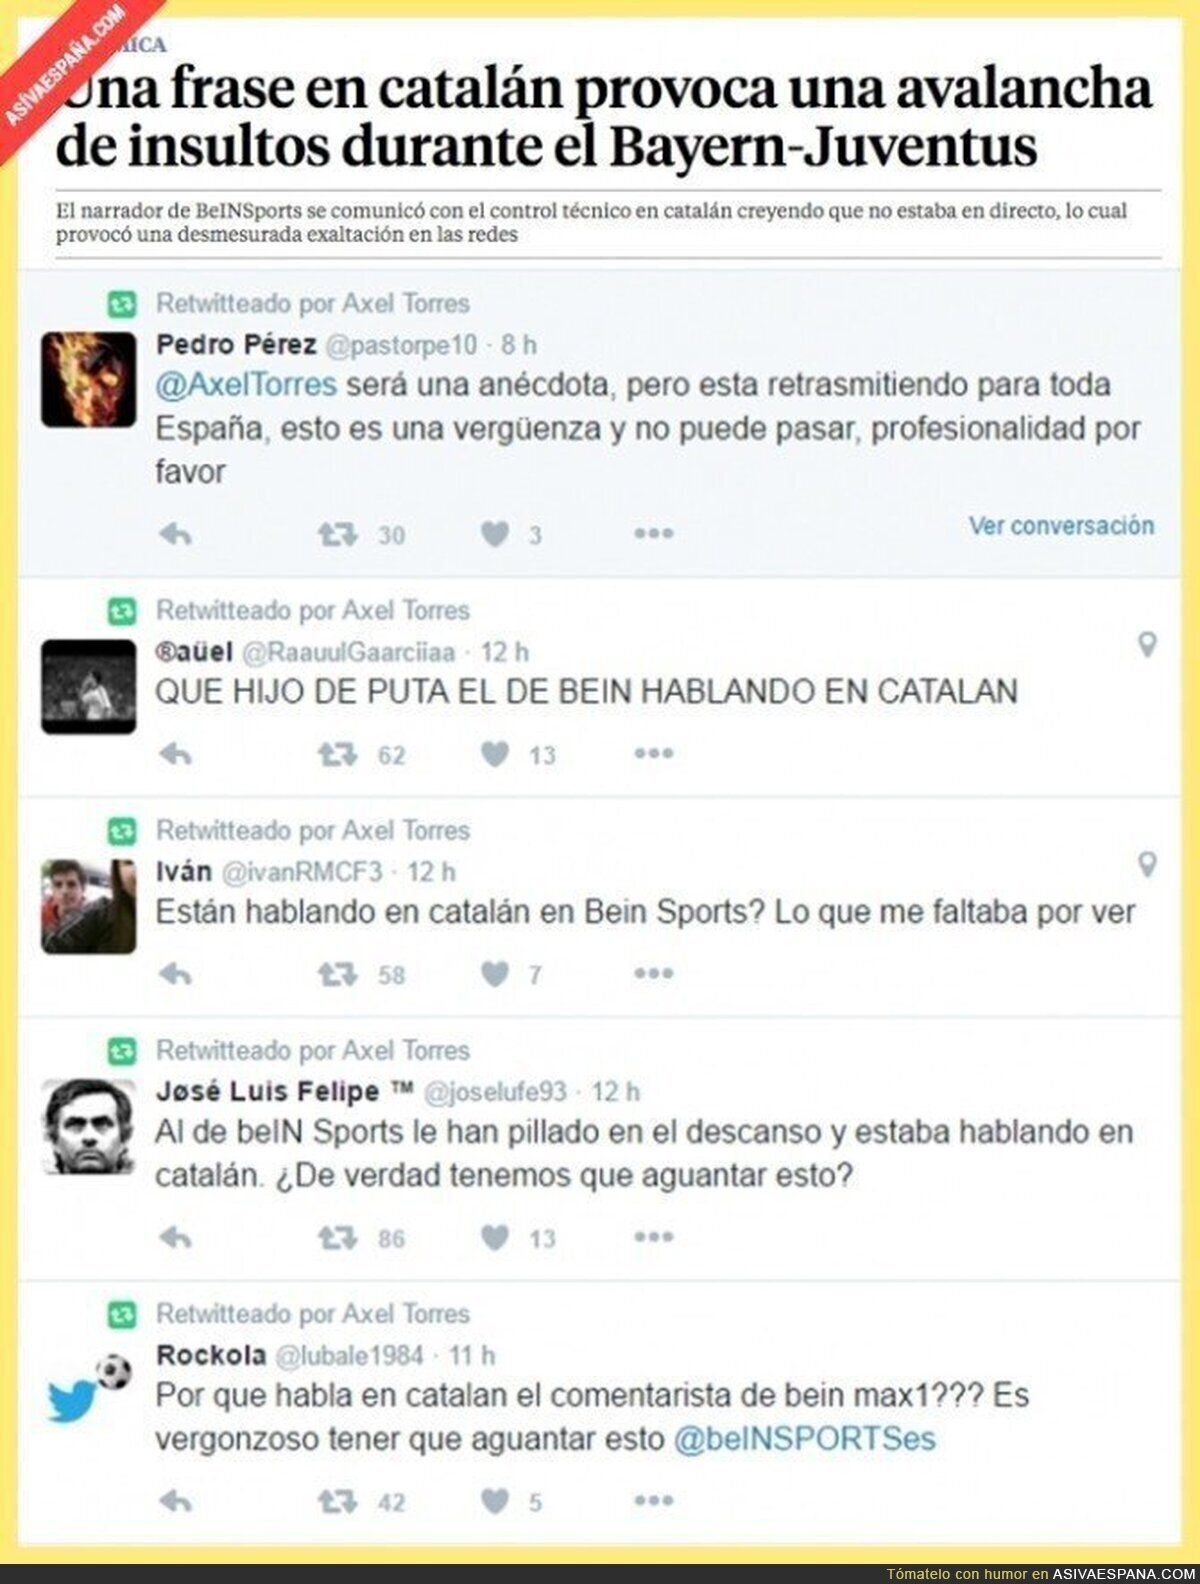 Así va España... hablan en catalán cuando pensaban que no estaban en directo y se lía en Twitter